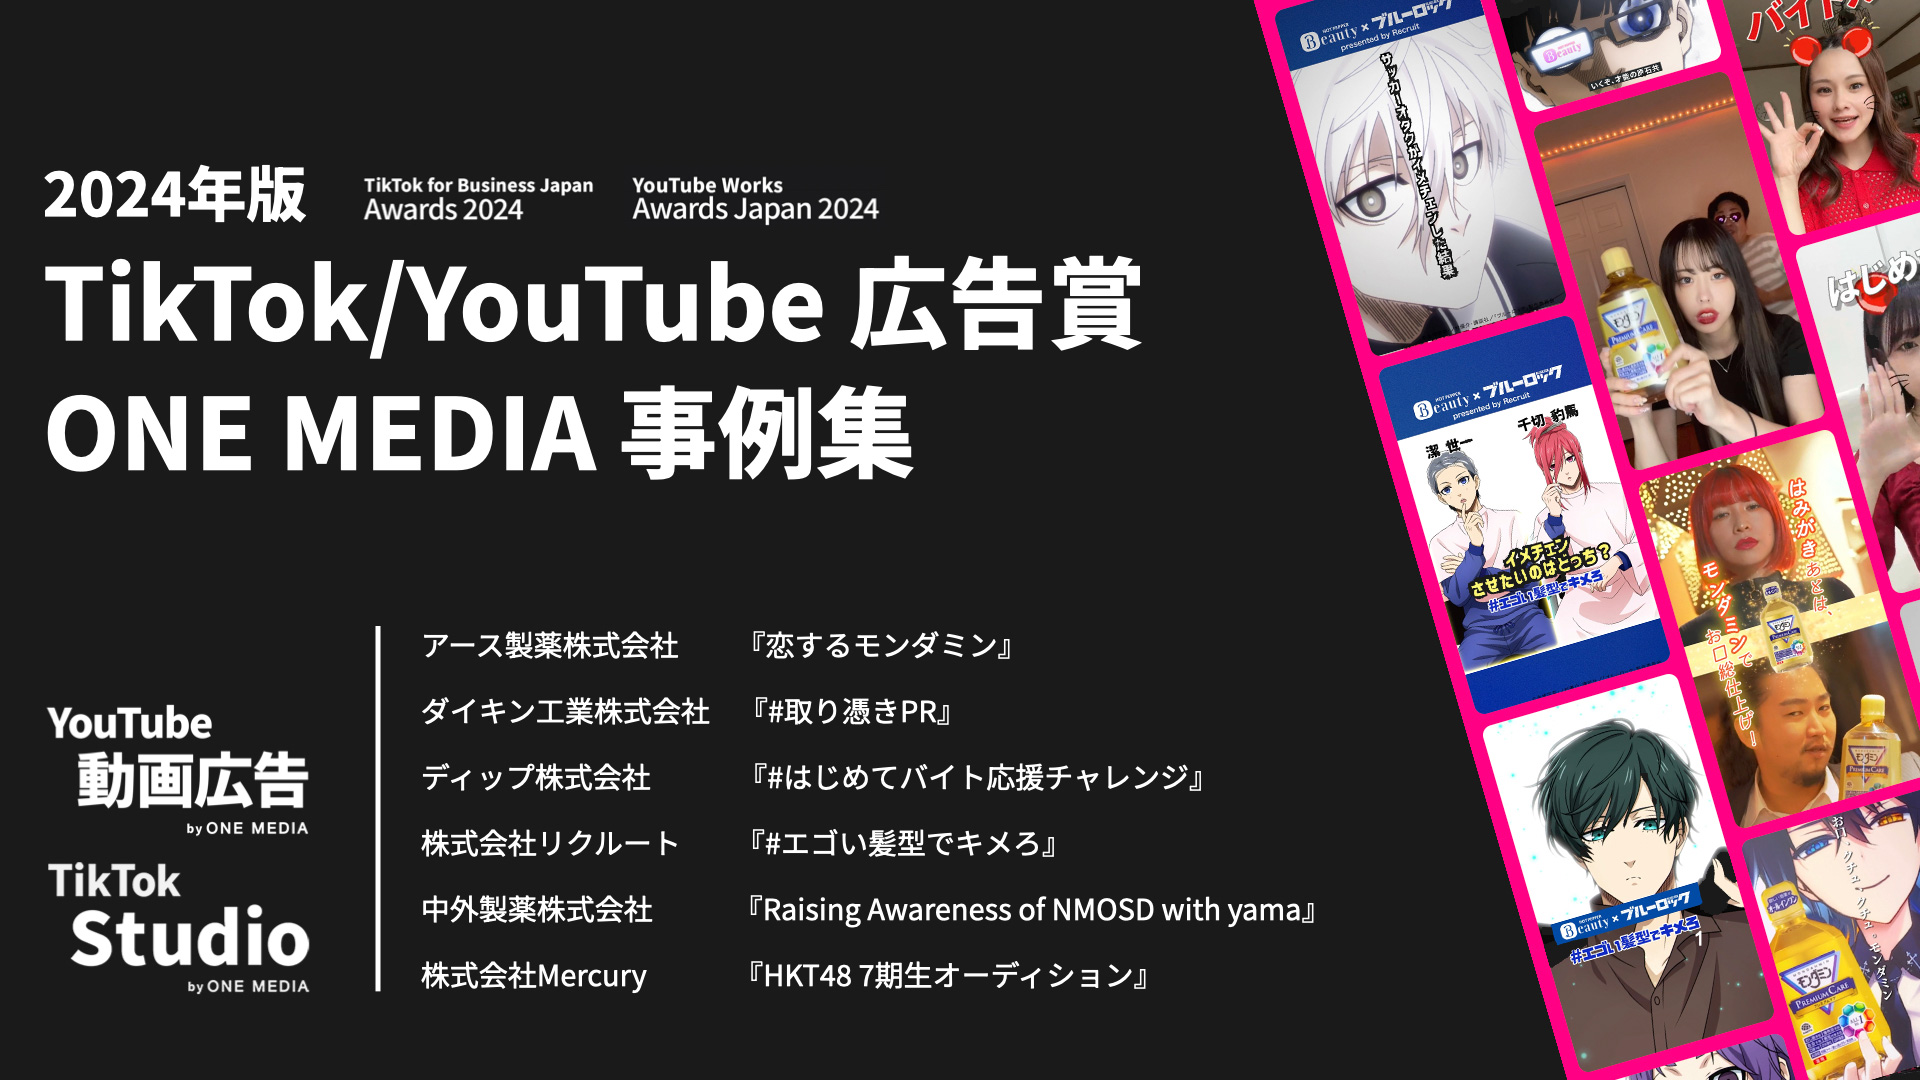 2024年版｜TikTok / YouTube の各広告賞に受賞・入賞した動画広告6作品の事例集 「TikTok for Business Japan Awards 2024」「YouTube Works Awards Japan 2024」の画像